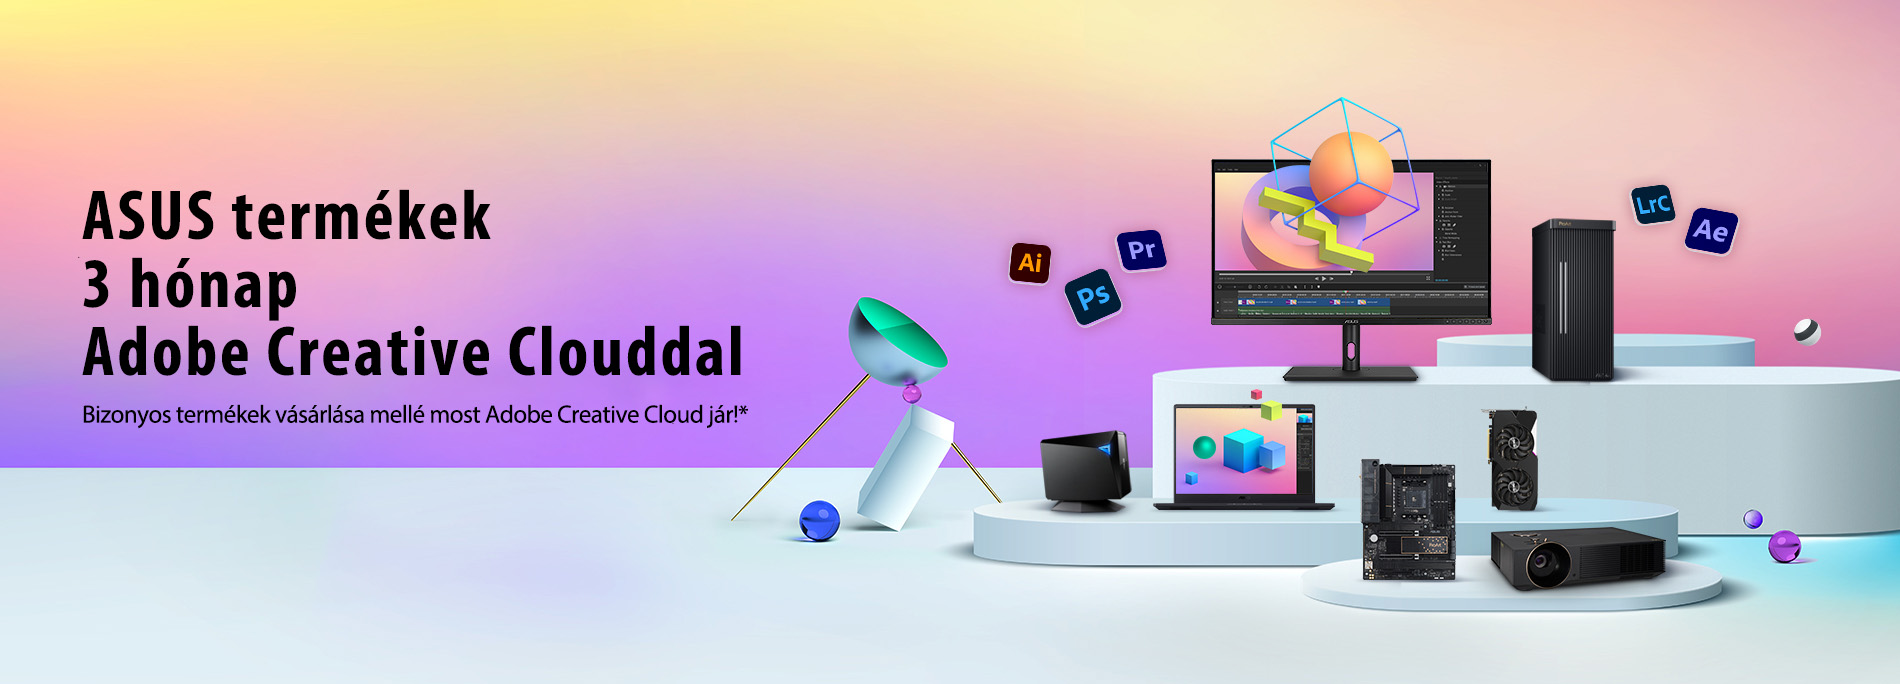 ASUS termékek 3 hónap Adobe Creative Clouddal ($238.47 értékben)